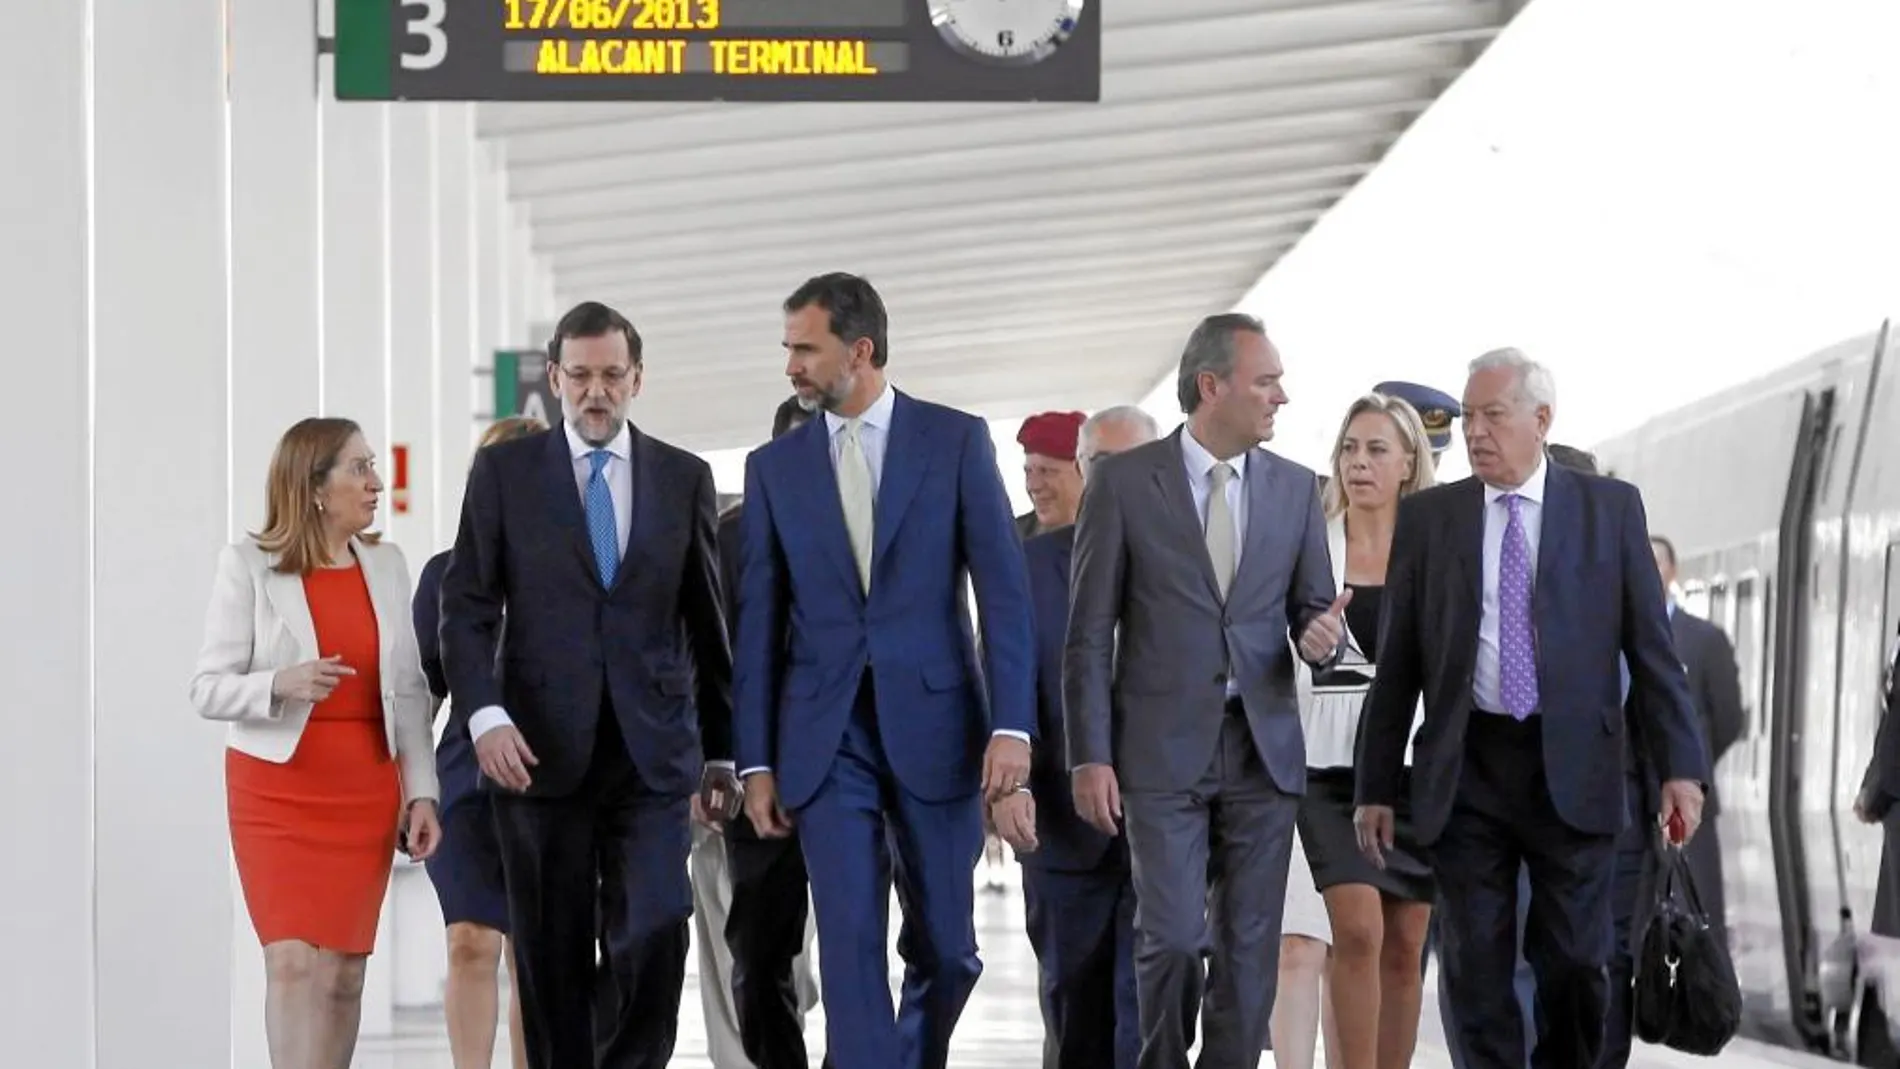 Pastor, Rajoy, el Príncipe Felipe, Fabra y el ministro García Margallo en primera fila. En la segunda, la alcaldesa Castedo y Cotino, entre otros